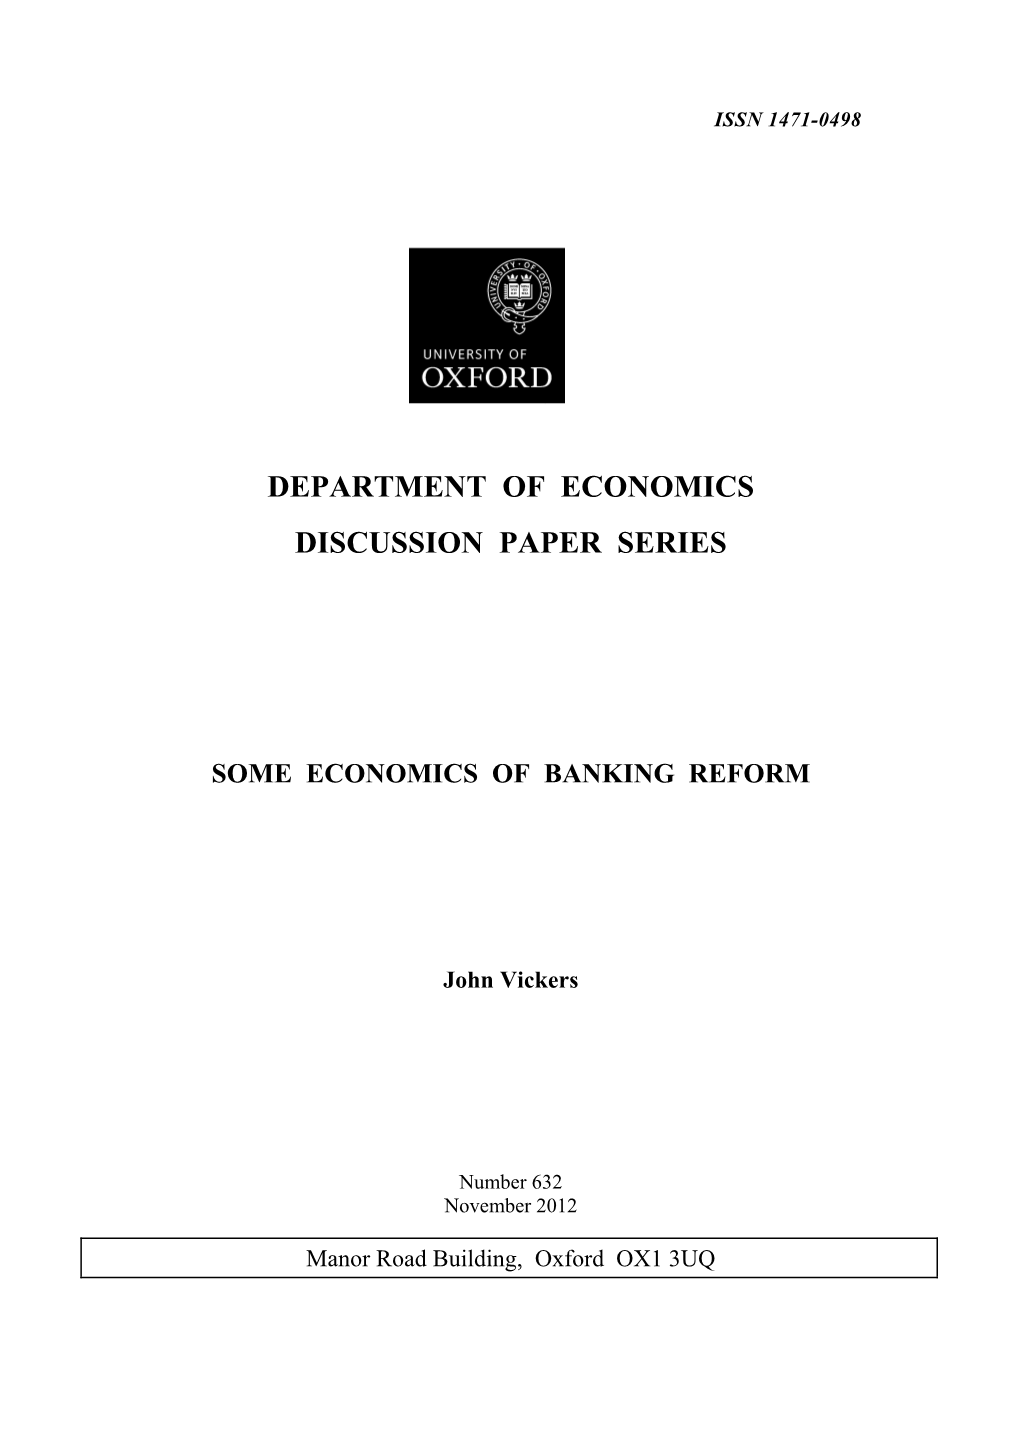 Some Economics of Banking Reform